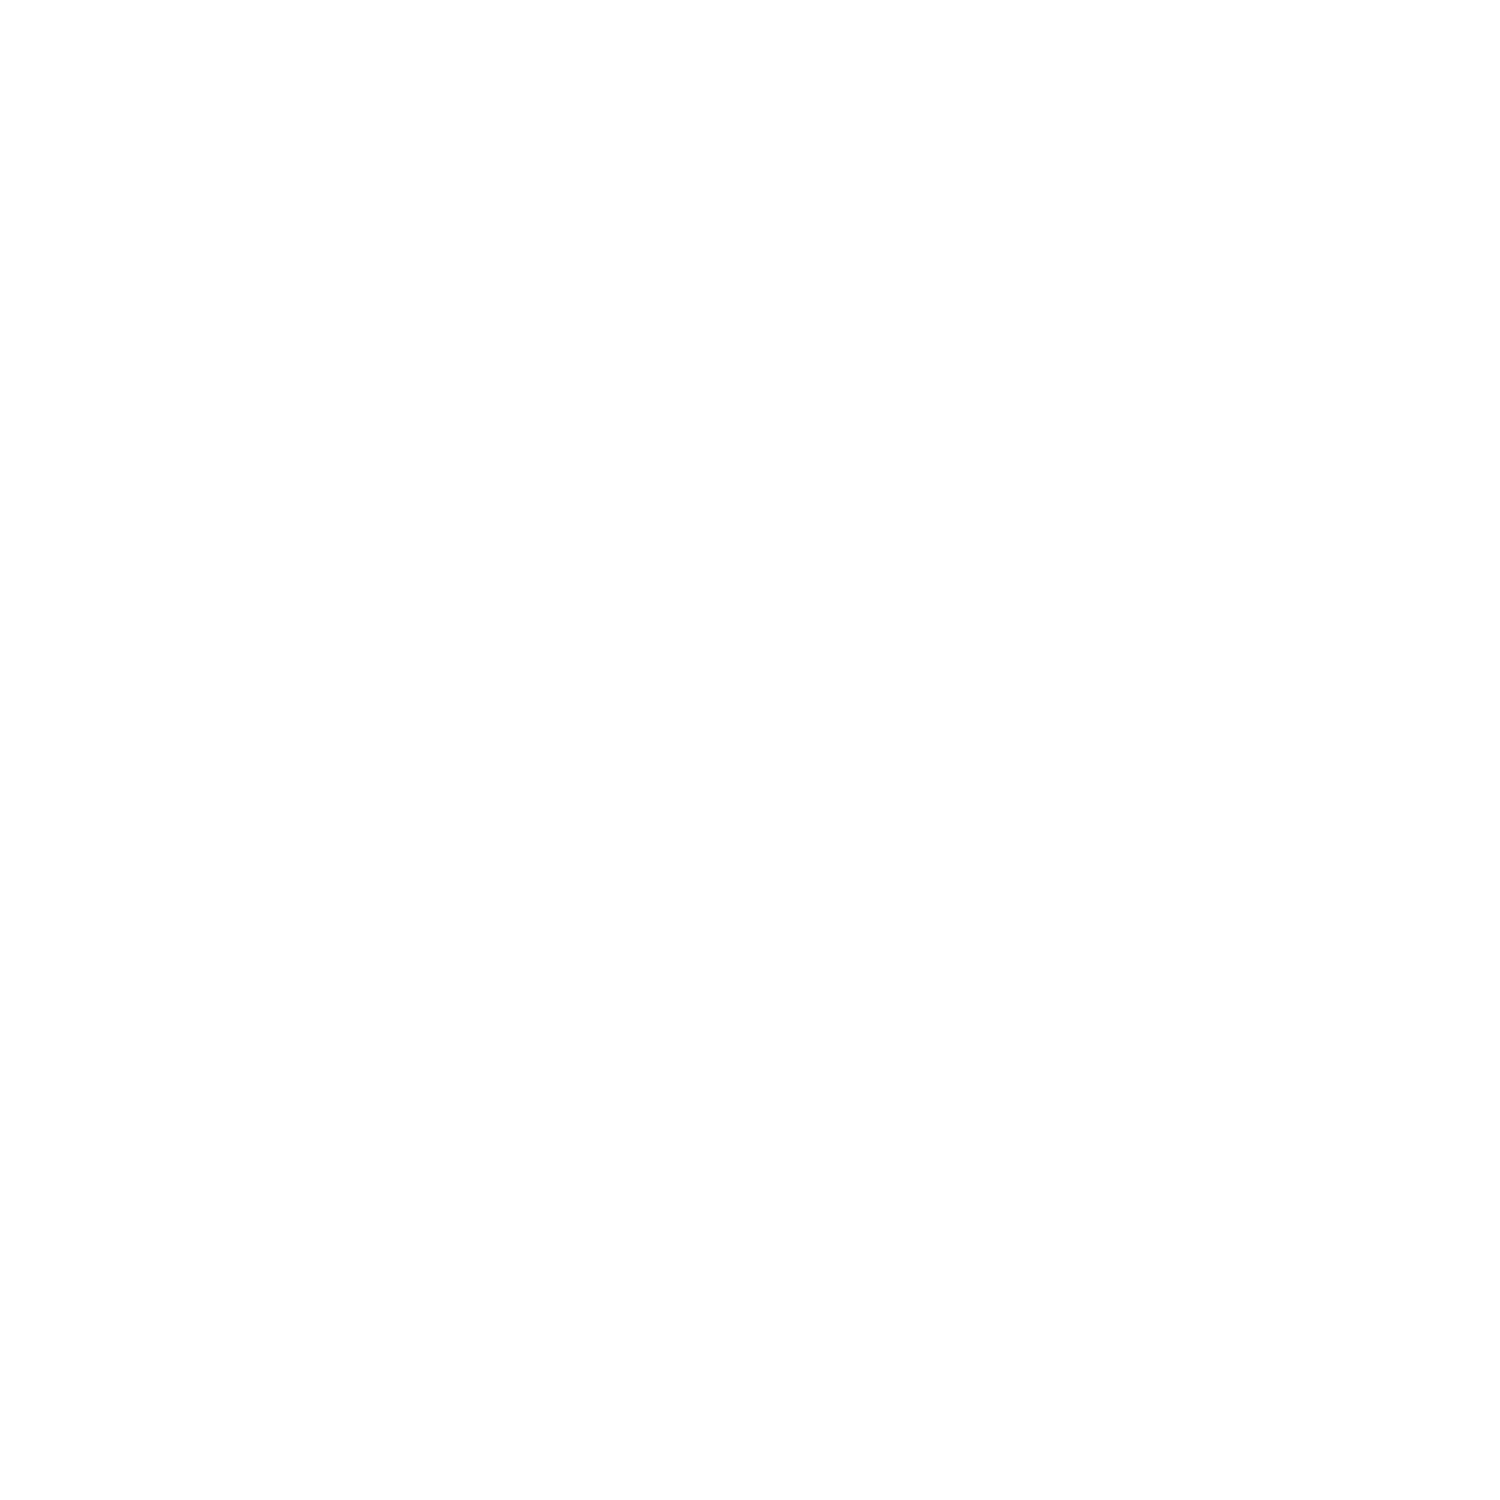 WHISPER ROOM